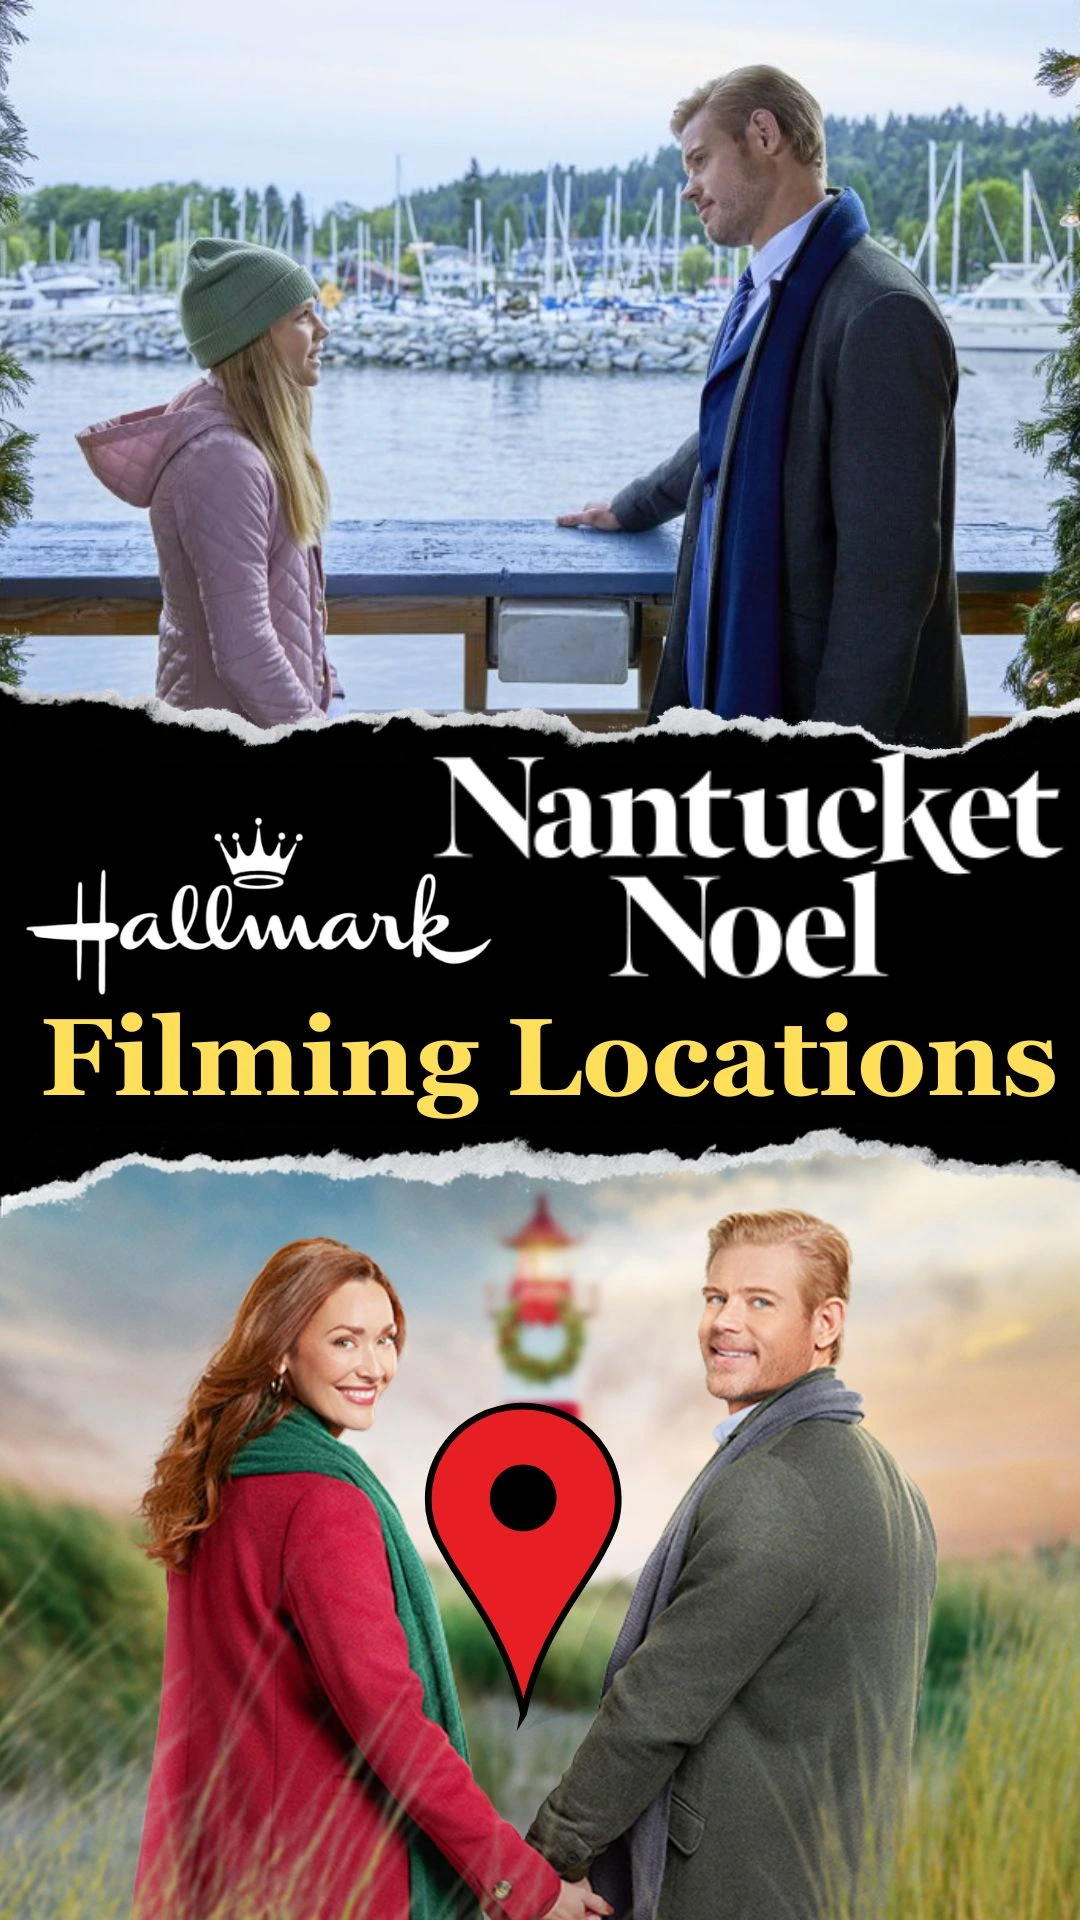 Nantucket Noel Filming Locations